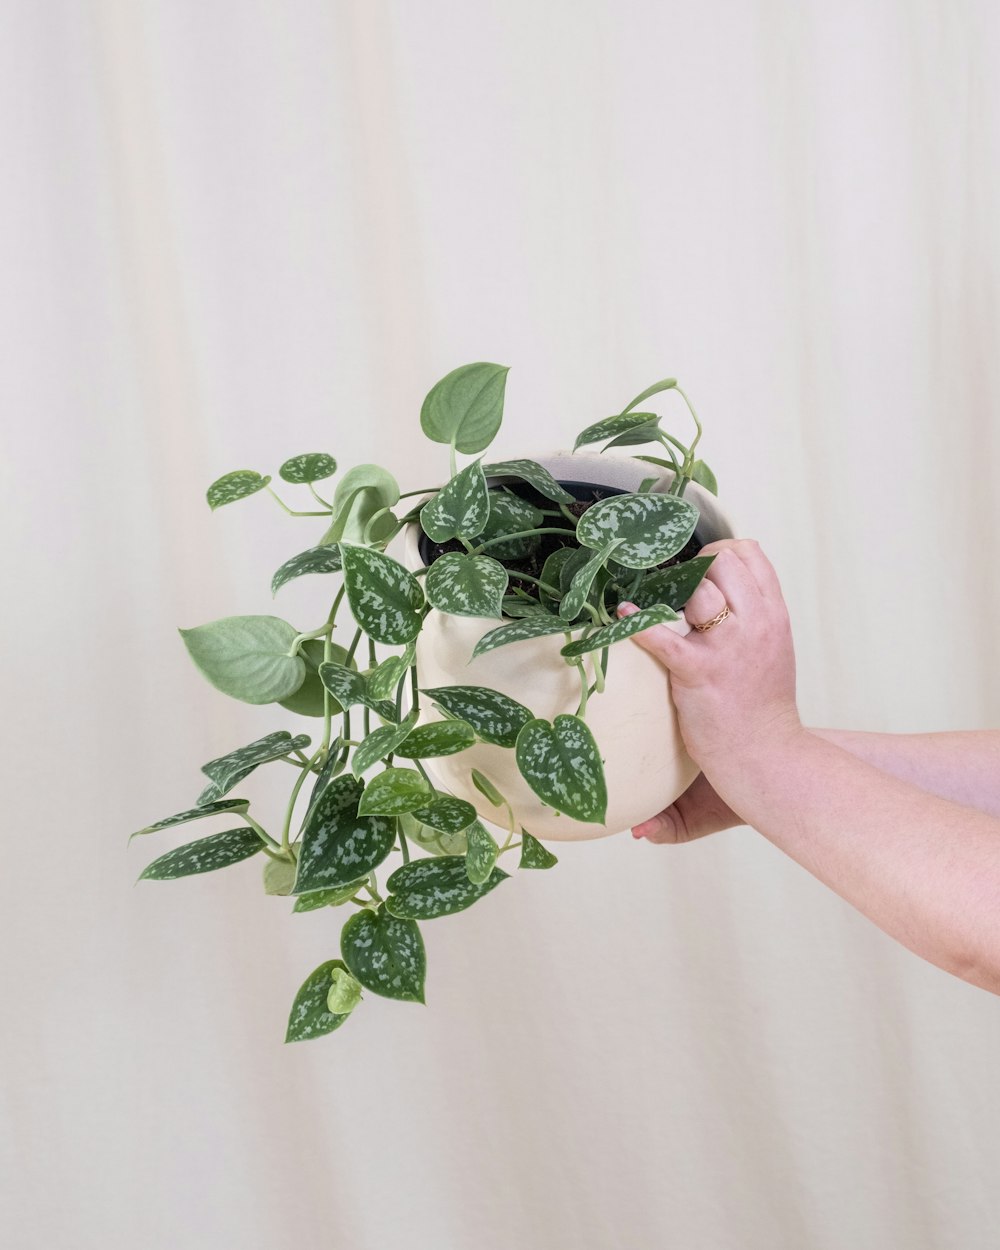 una persona sosteniendo una planta en maceta en la mano